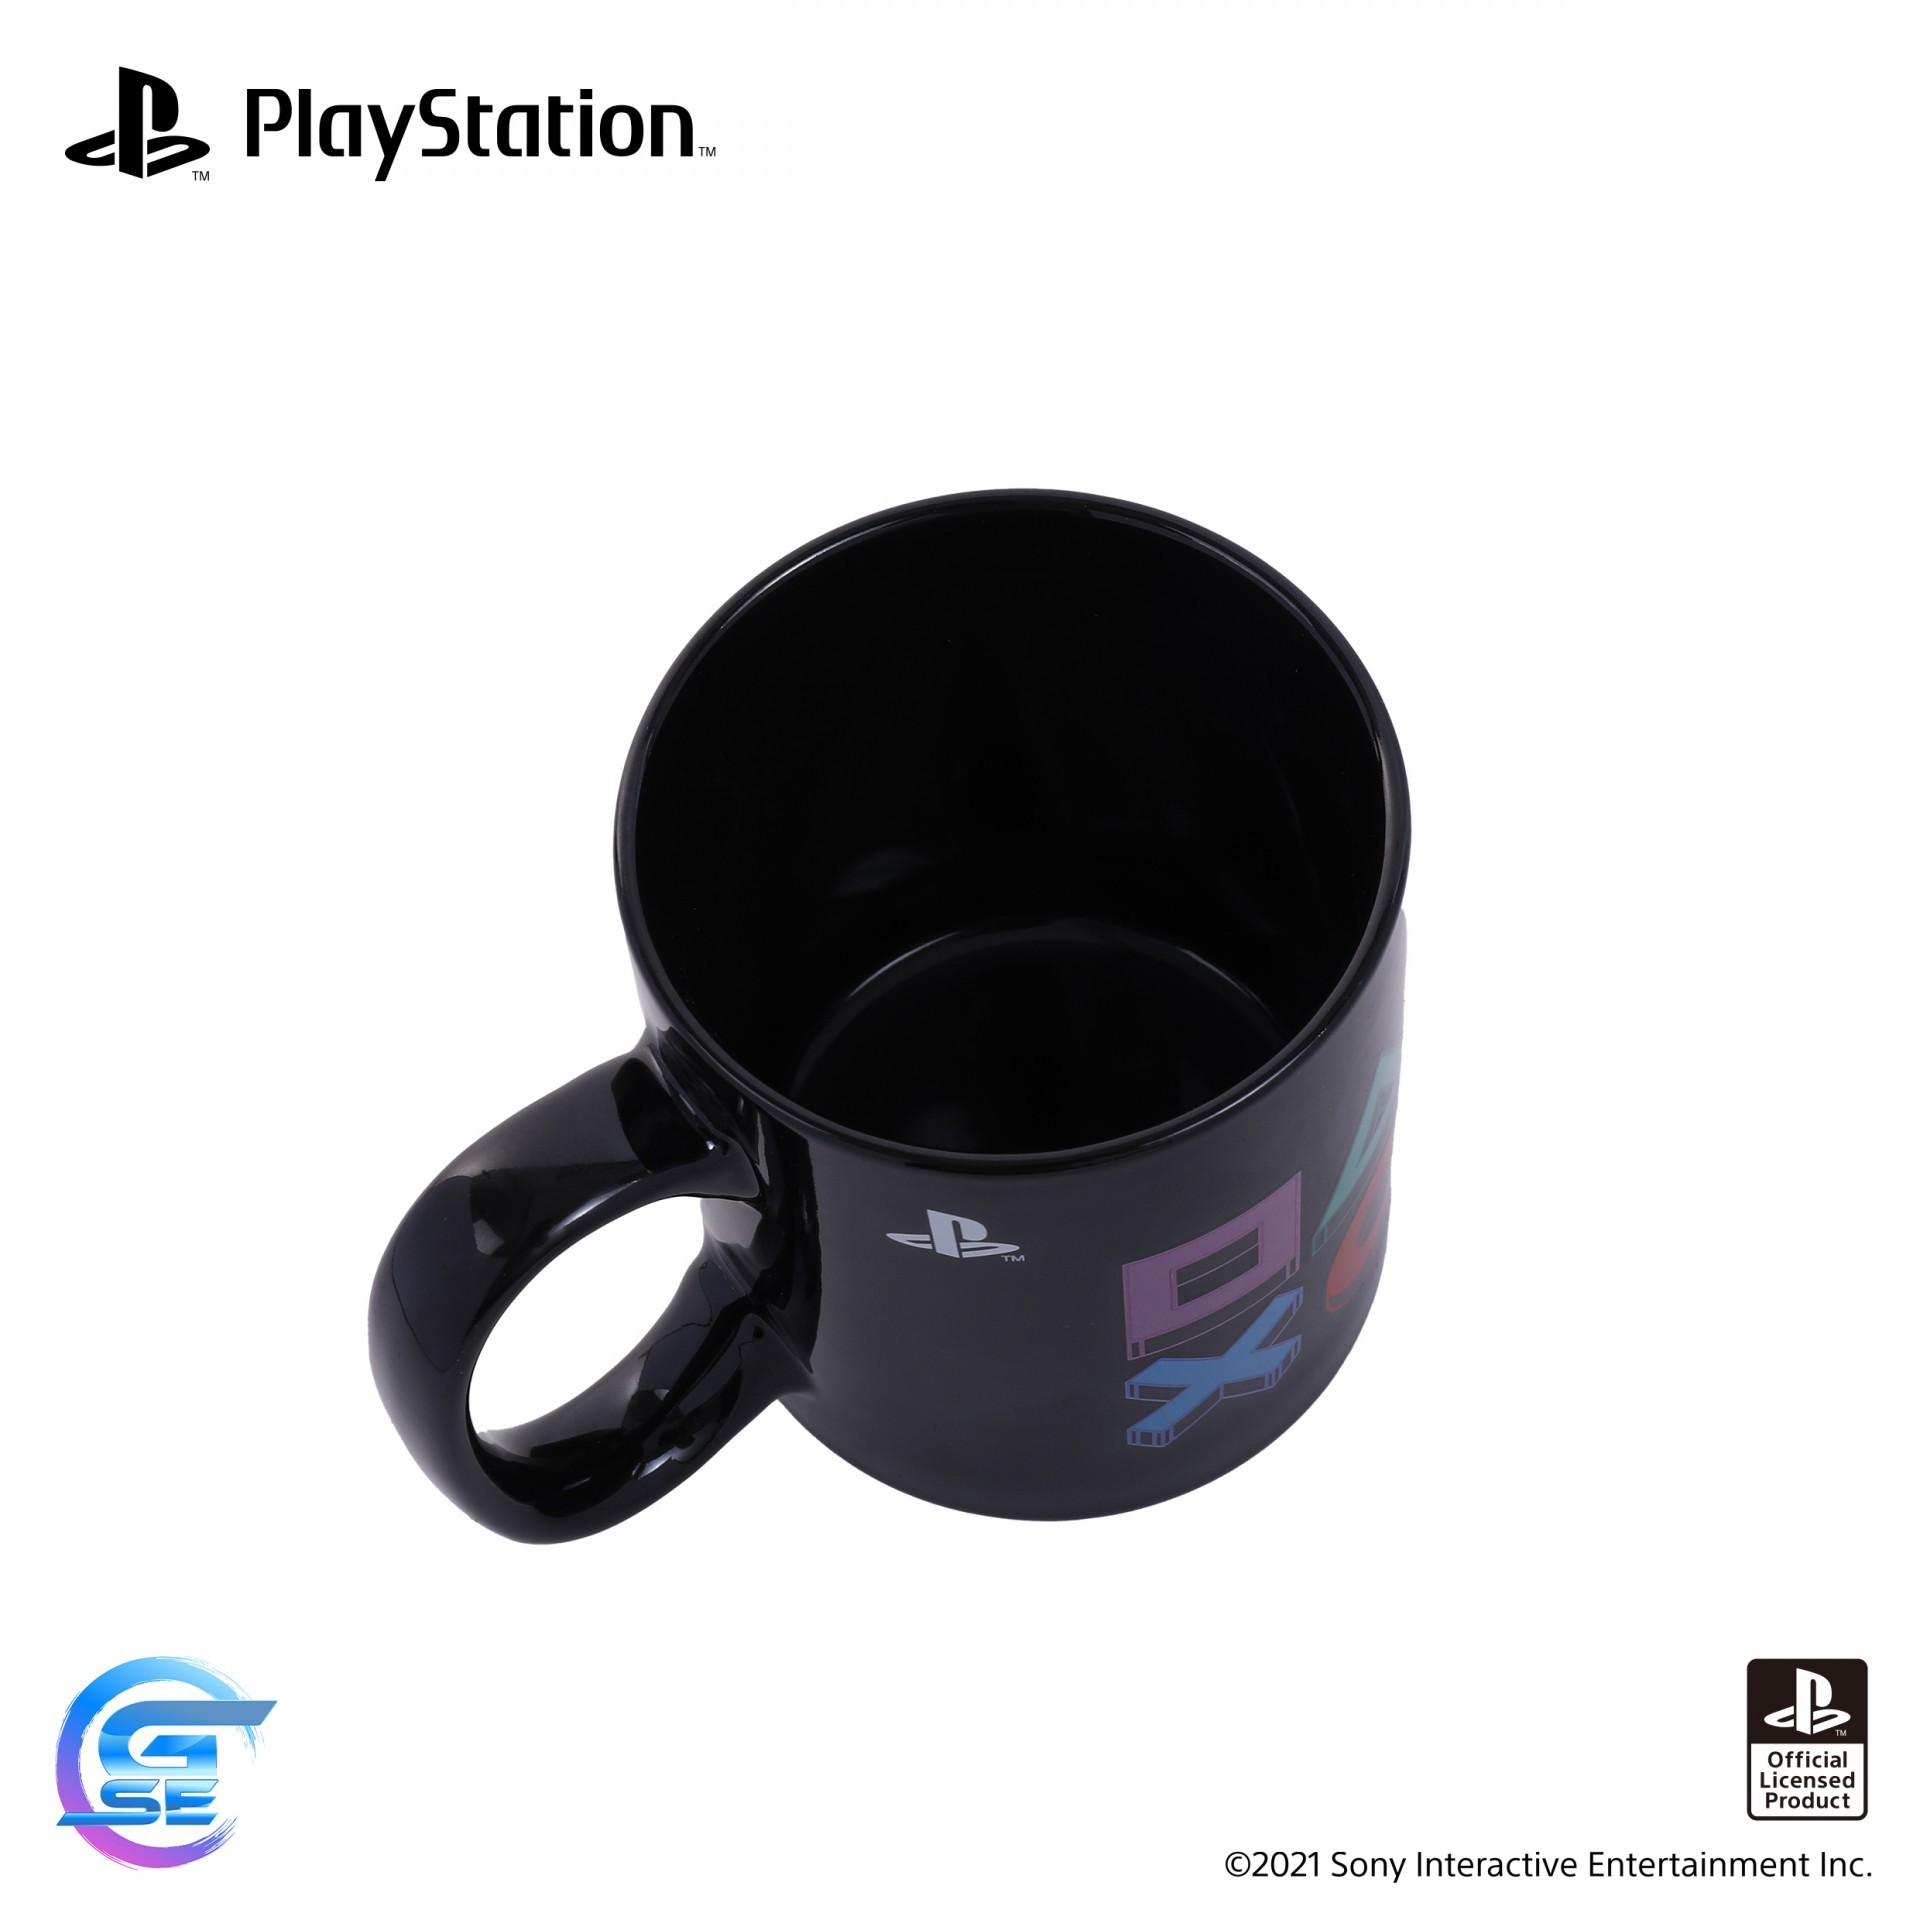 官方授权 PlayStation 主题周边产品于台湾地区将延期出货